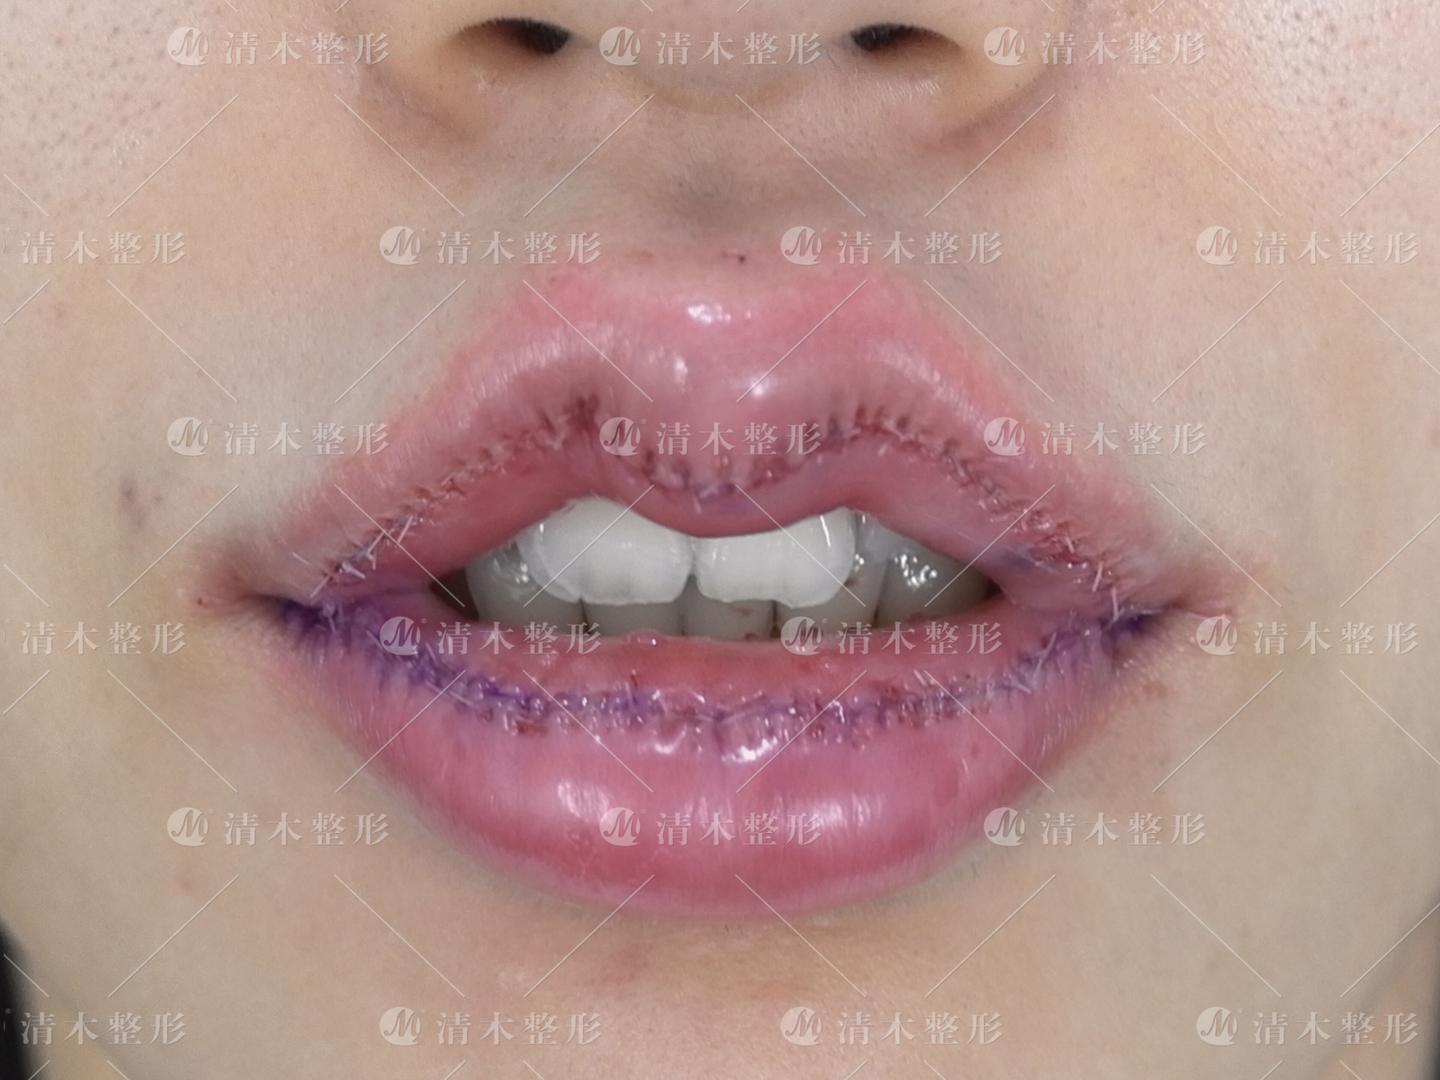 m唇手术一个月了嘴还硬的凸起是恢复慢还是疤痕增生?